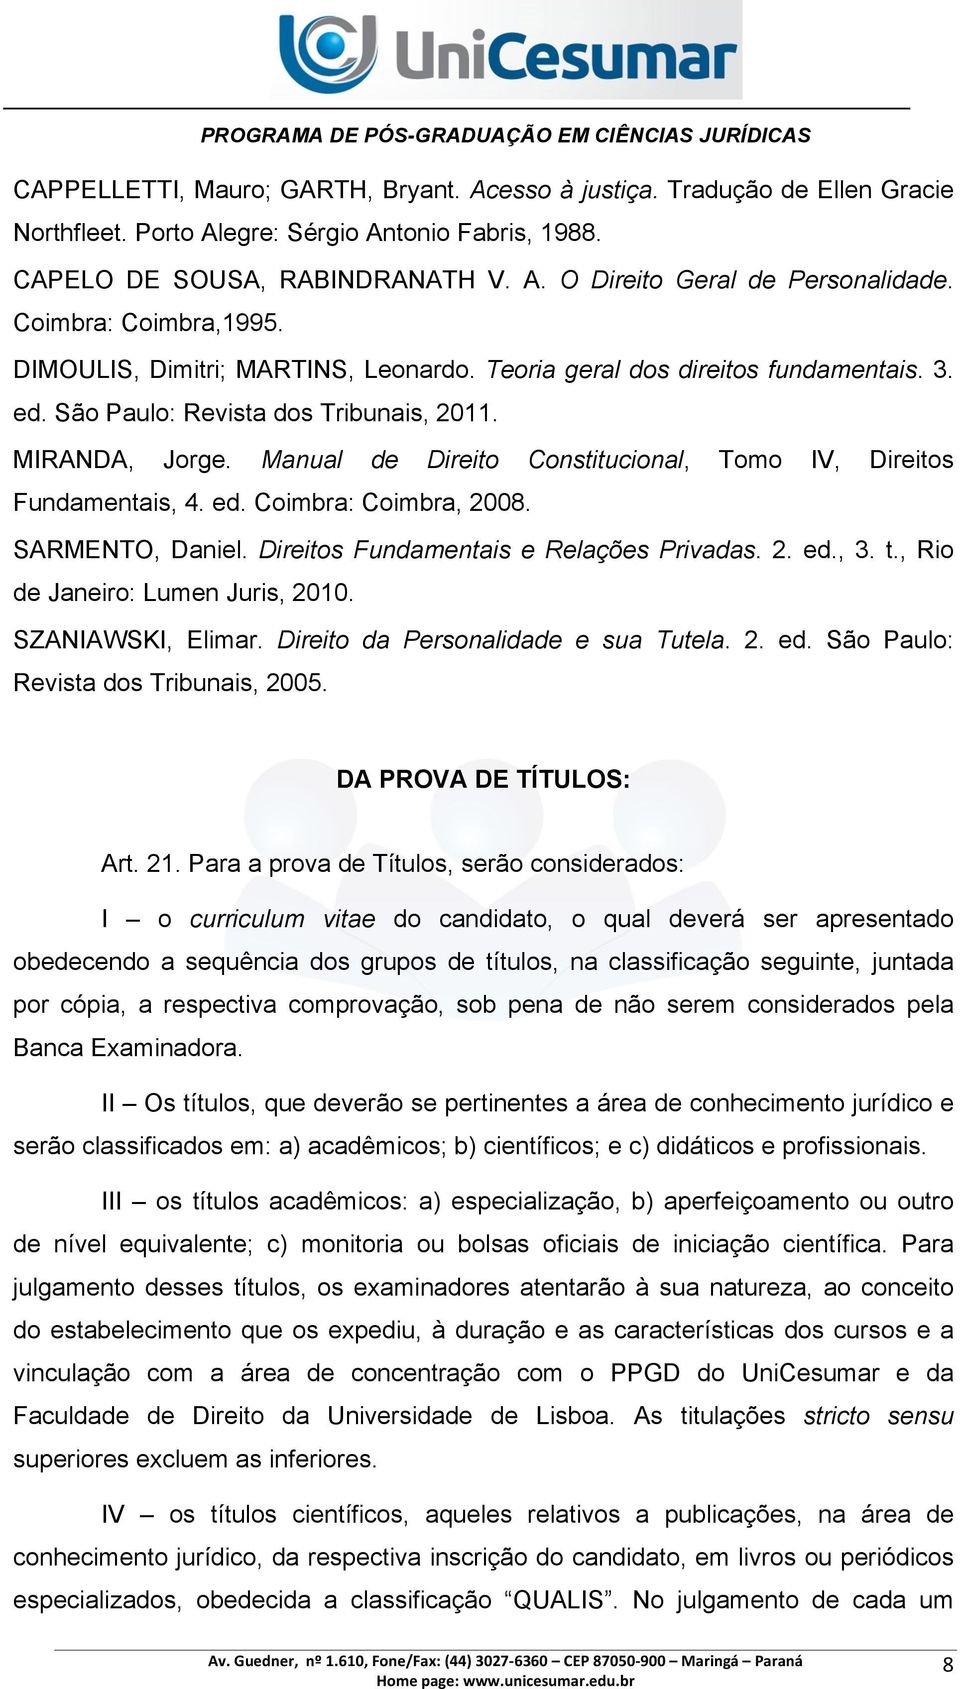 Manual de Direito Constitucional, Tomo IV, Direitos Fundamentais, 4. ed. Coimbra: Coimbra, 2008. SARMENTO, Daniel. Direitos Fundamentais e Relações Privadas. 2. ed., 3. t.